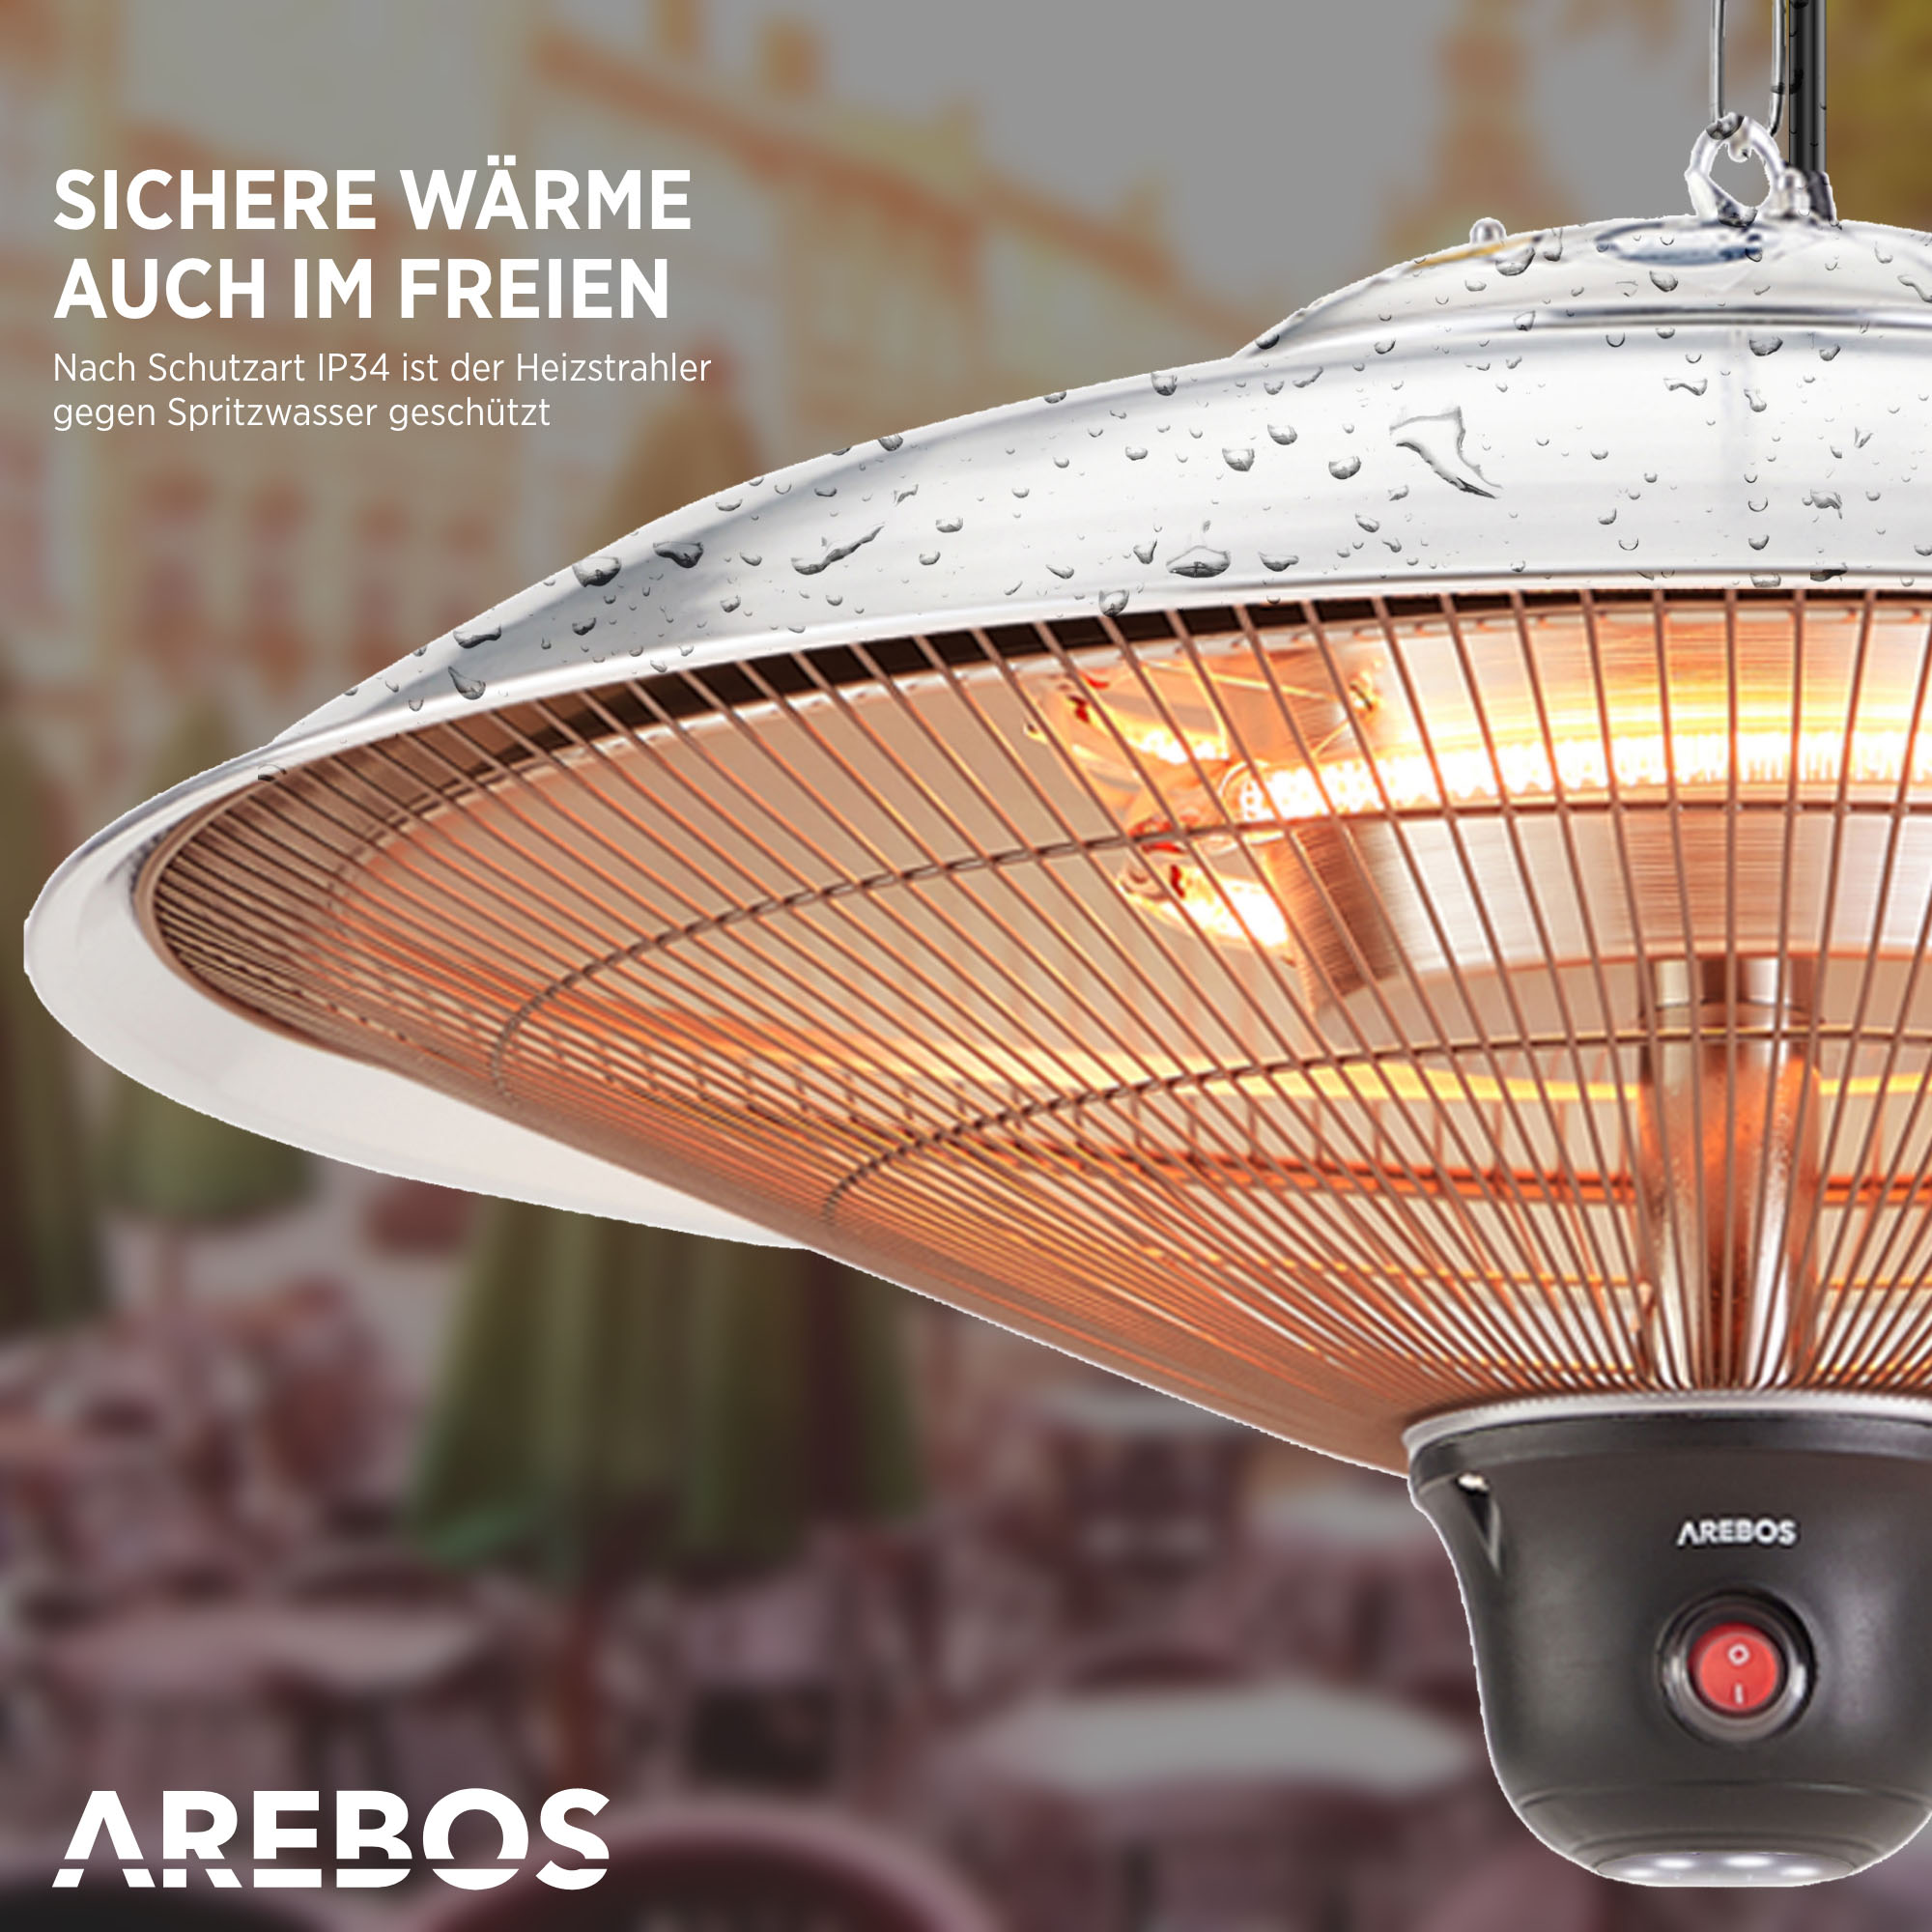 + Watt) | Silber 3 AREBOS Heizstufen rund mit 2000W Fernbedienung Deckenheizstrahler (2000 | LED-Lampe